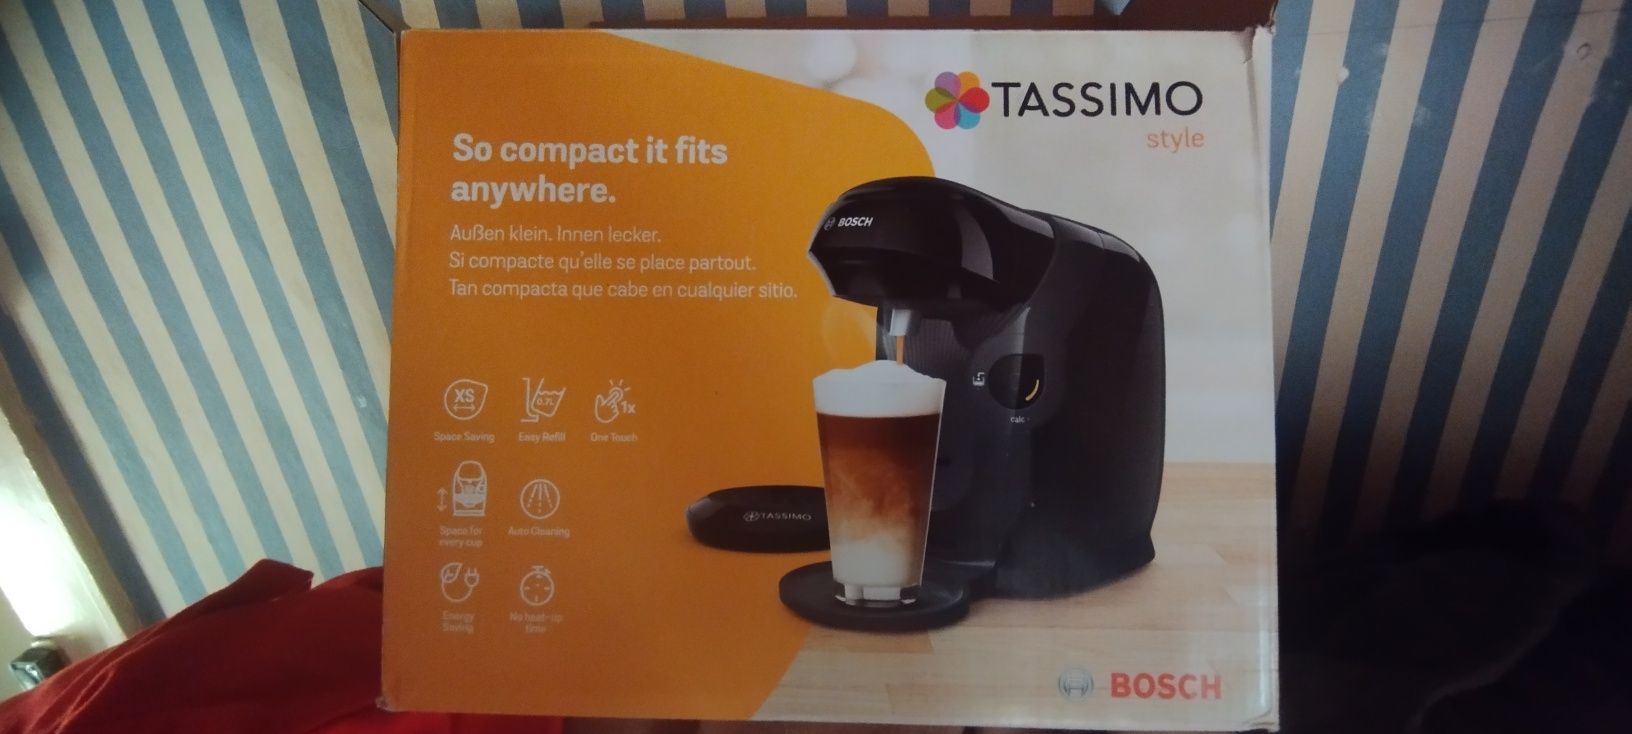 Maquina de Café Bosch Tassimo